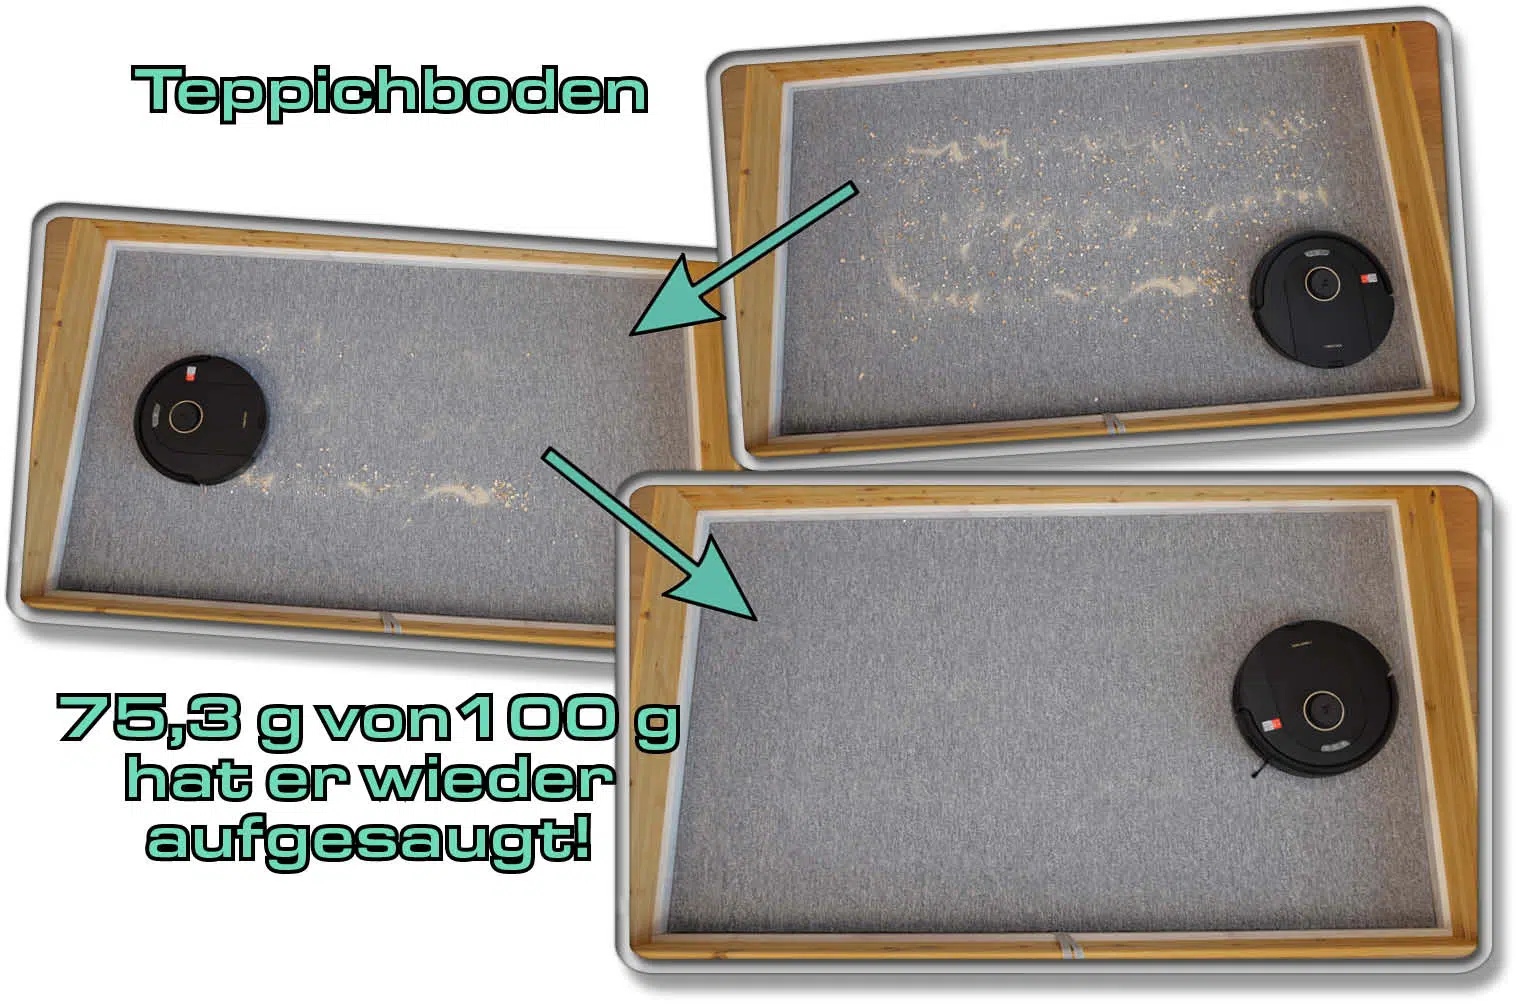 Roborock Q5 Pro - Die gemessene Saugleistung auf Teppichboden